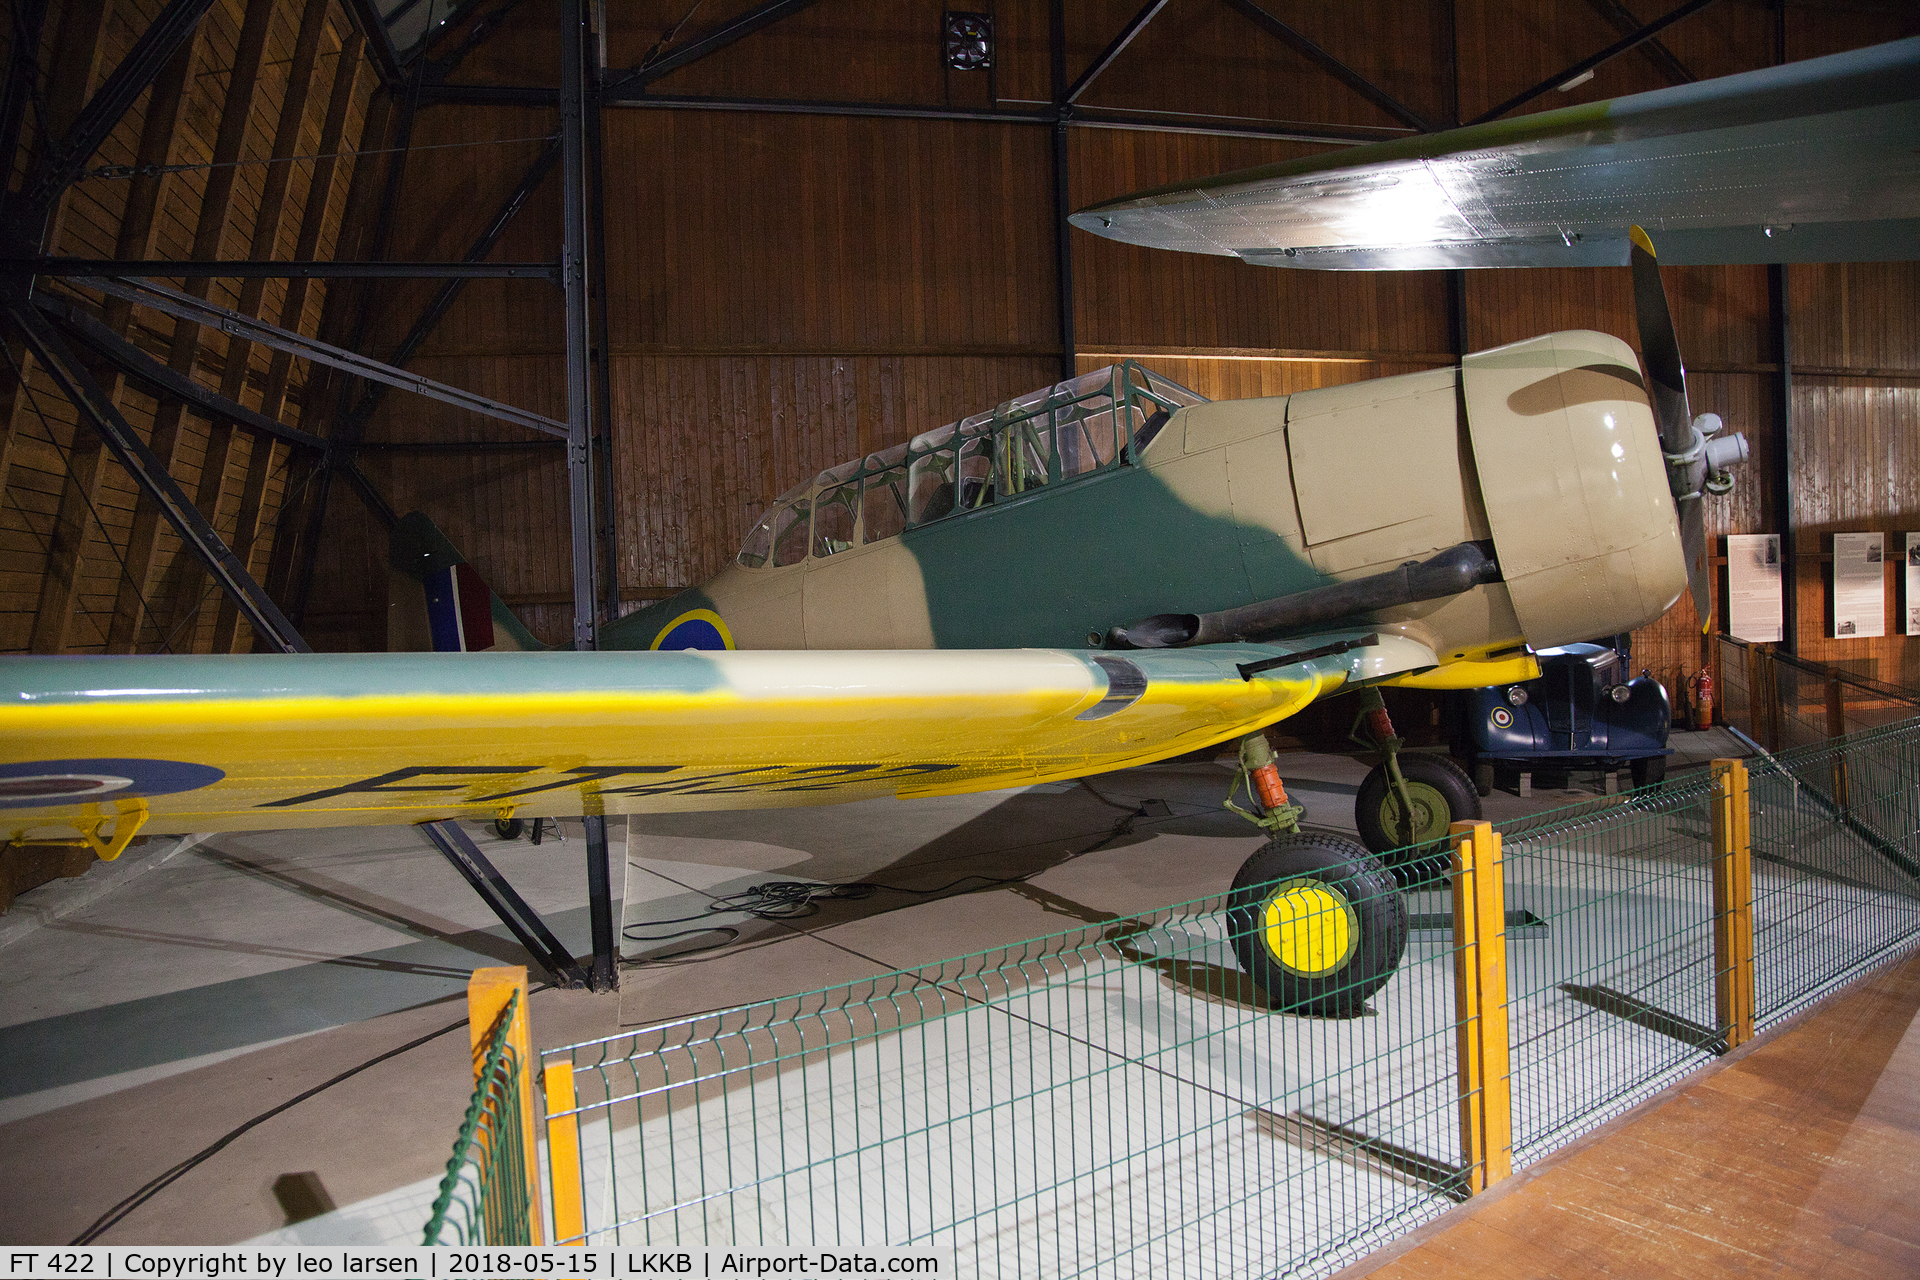 FT 422, 1943 Noorduyn AT-16 Harvard IIB C/N 14A-1462, Kebly Air Museum 15.5.2018